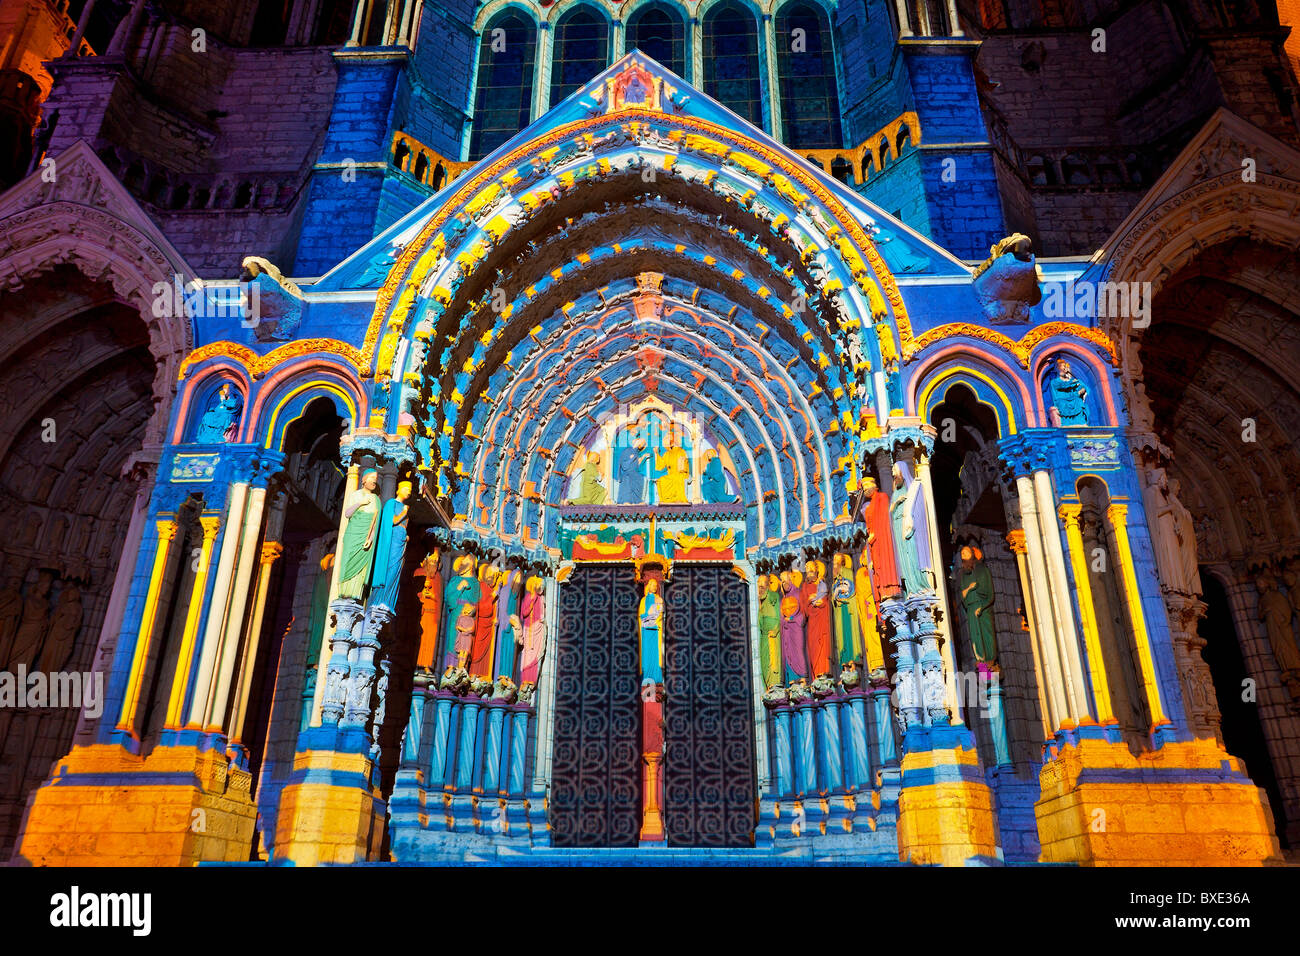 La cattedrale di Chartres illuminata di notte Foto Stock